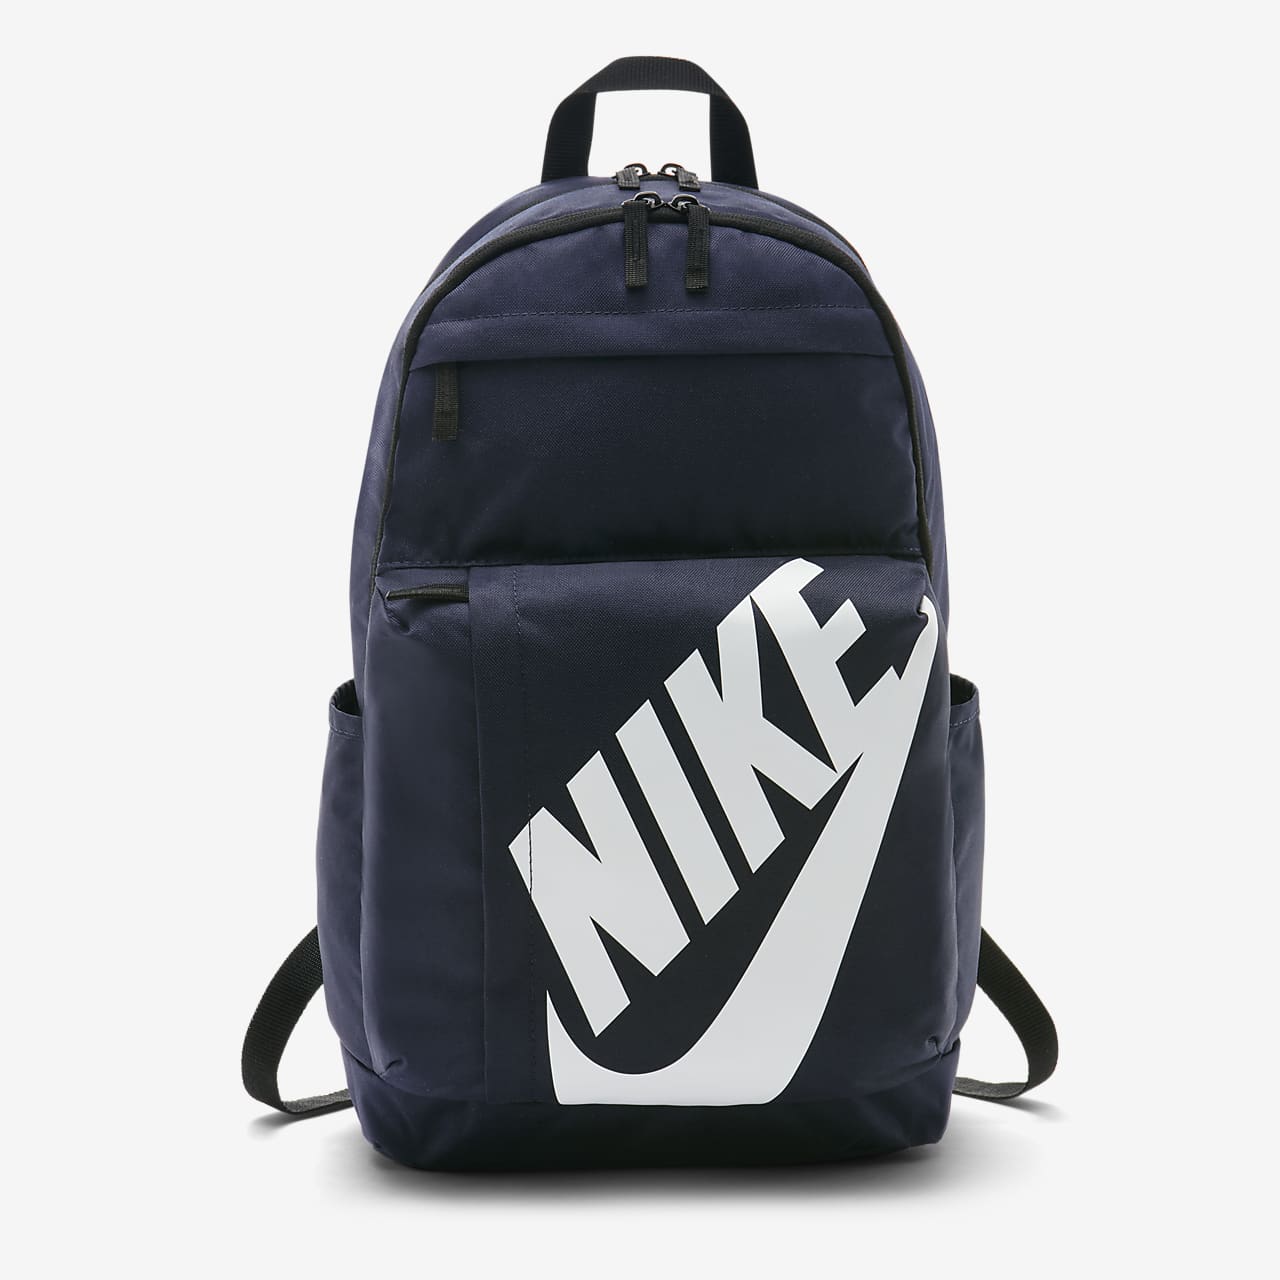 nike sportswear elemental backpack 2.0